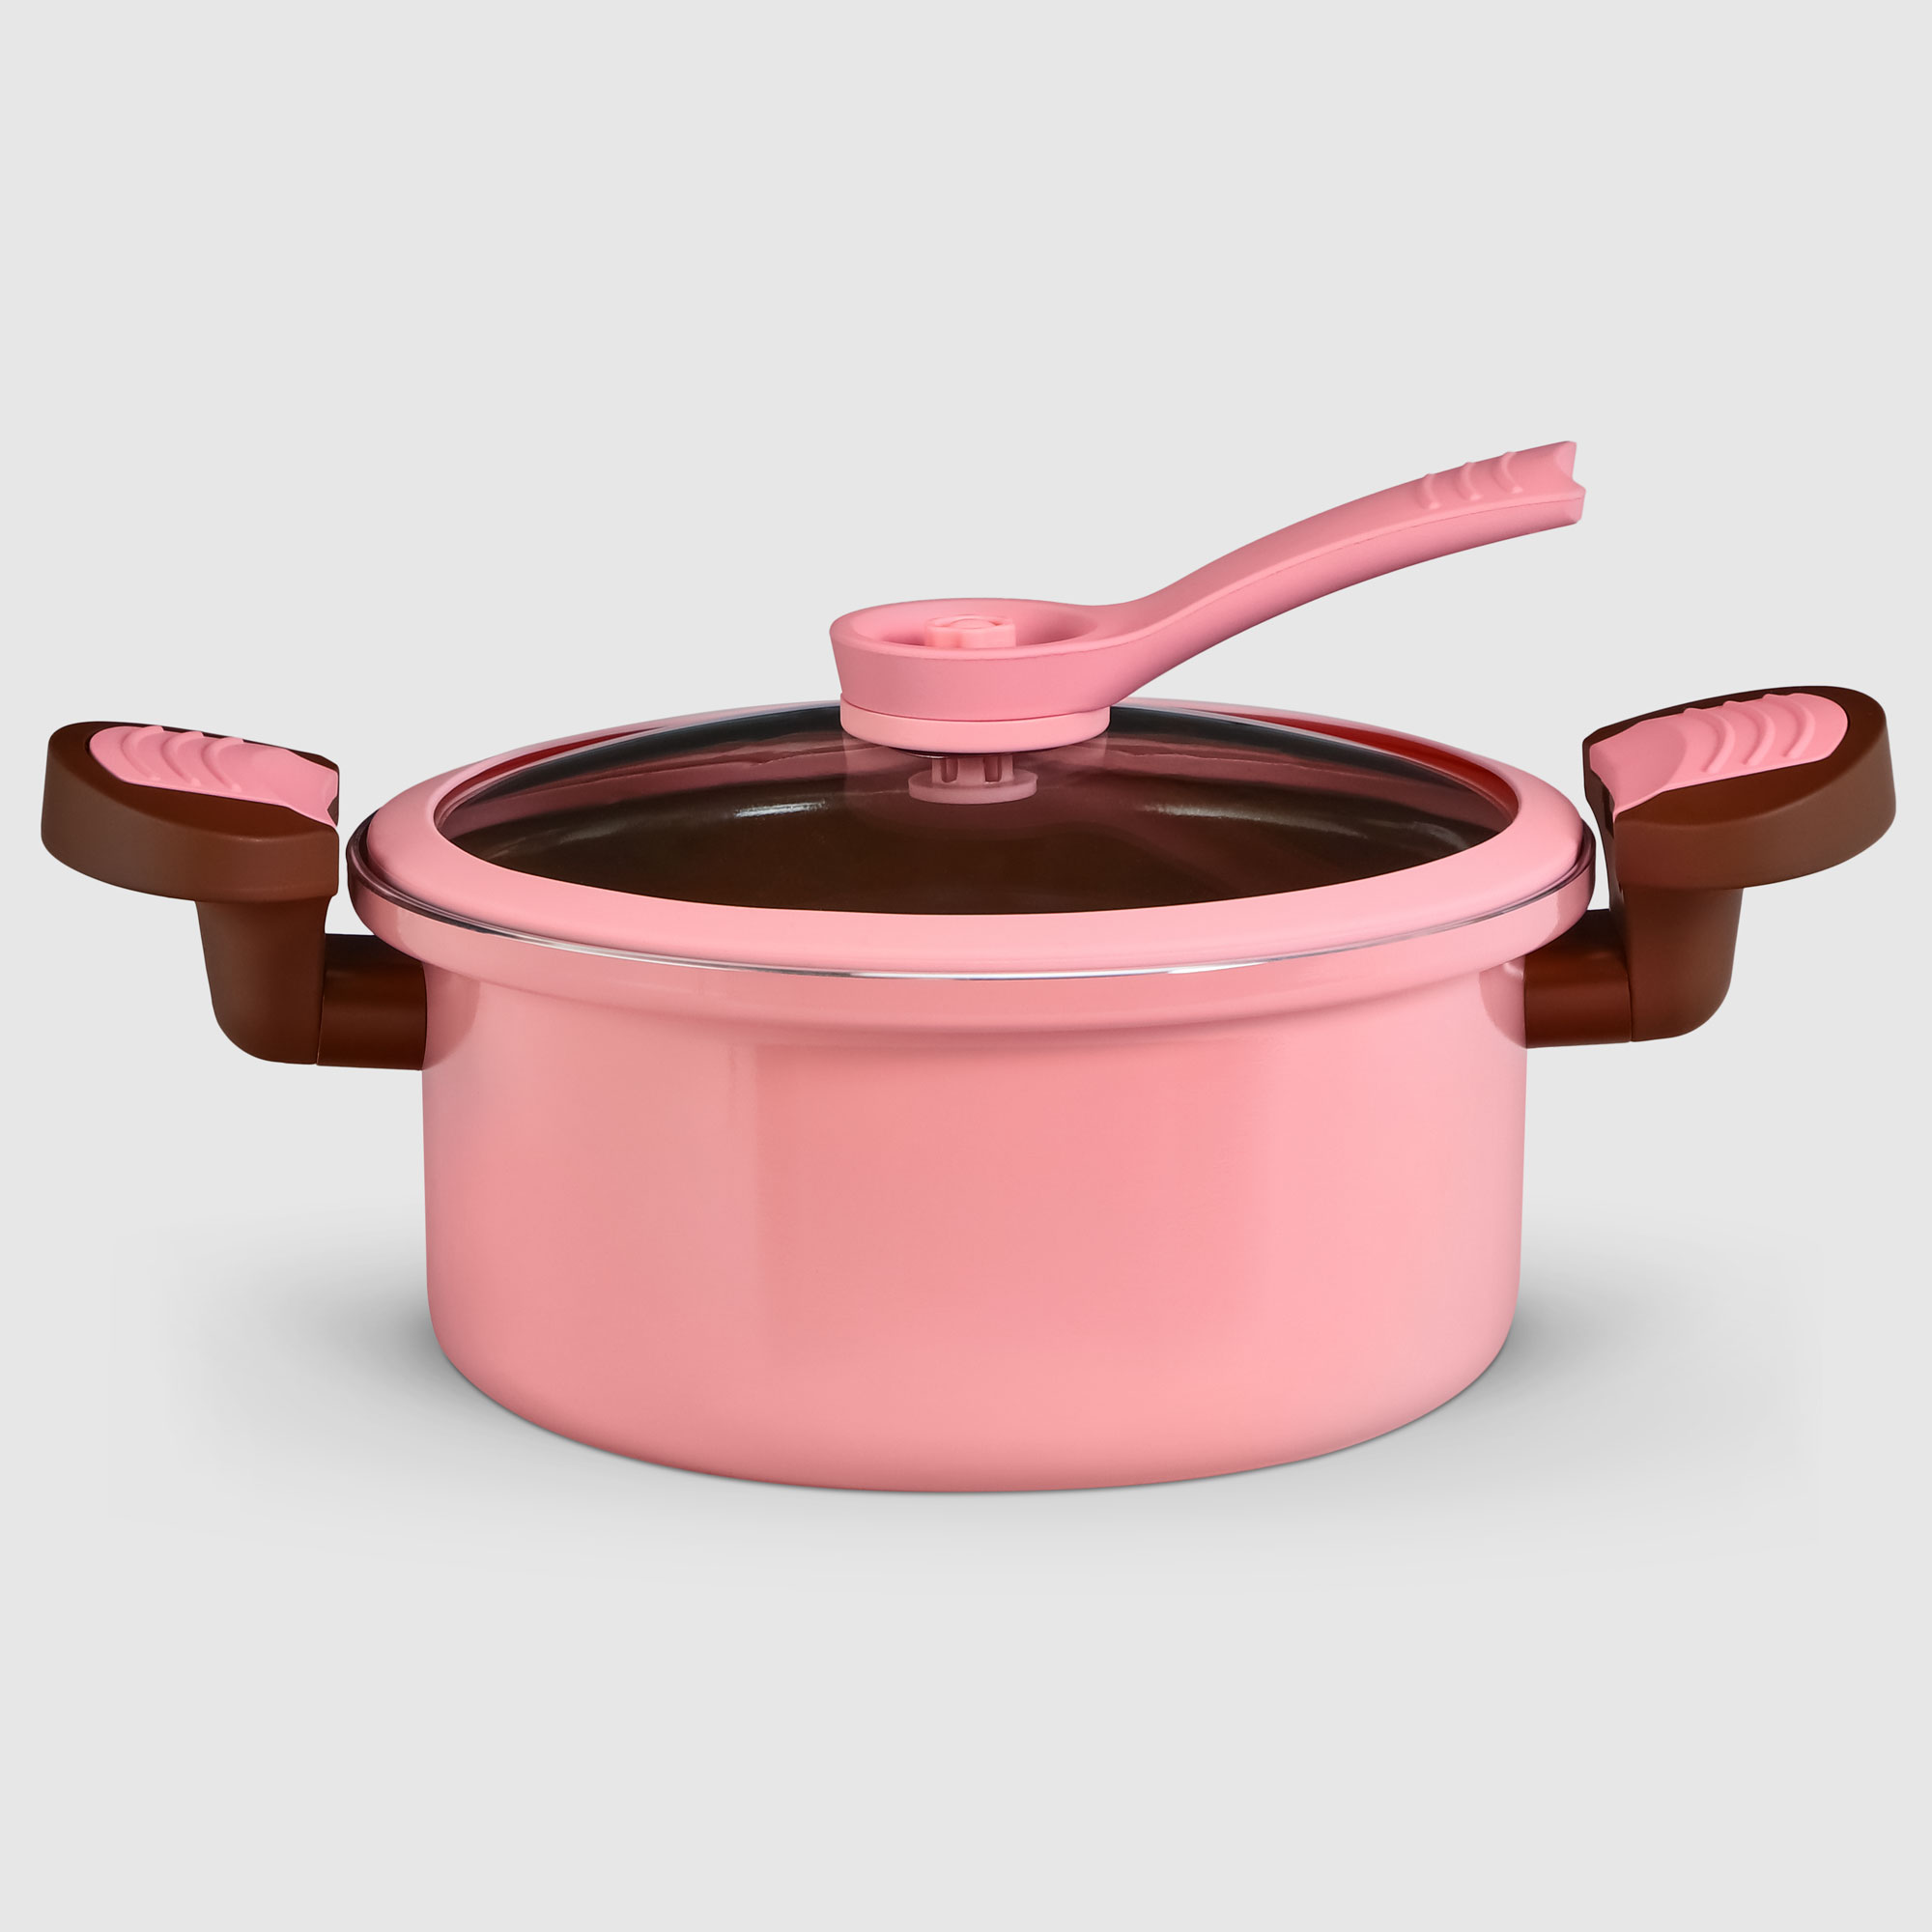 Скороварка низкого давления Kitchenstar 24 см, цвет розовый